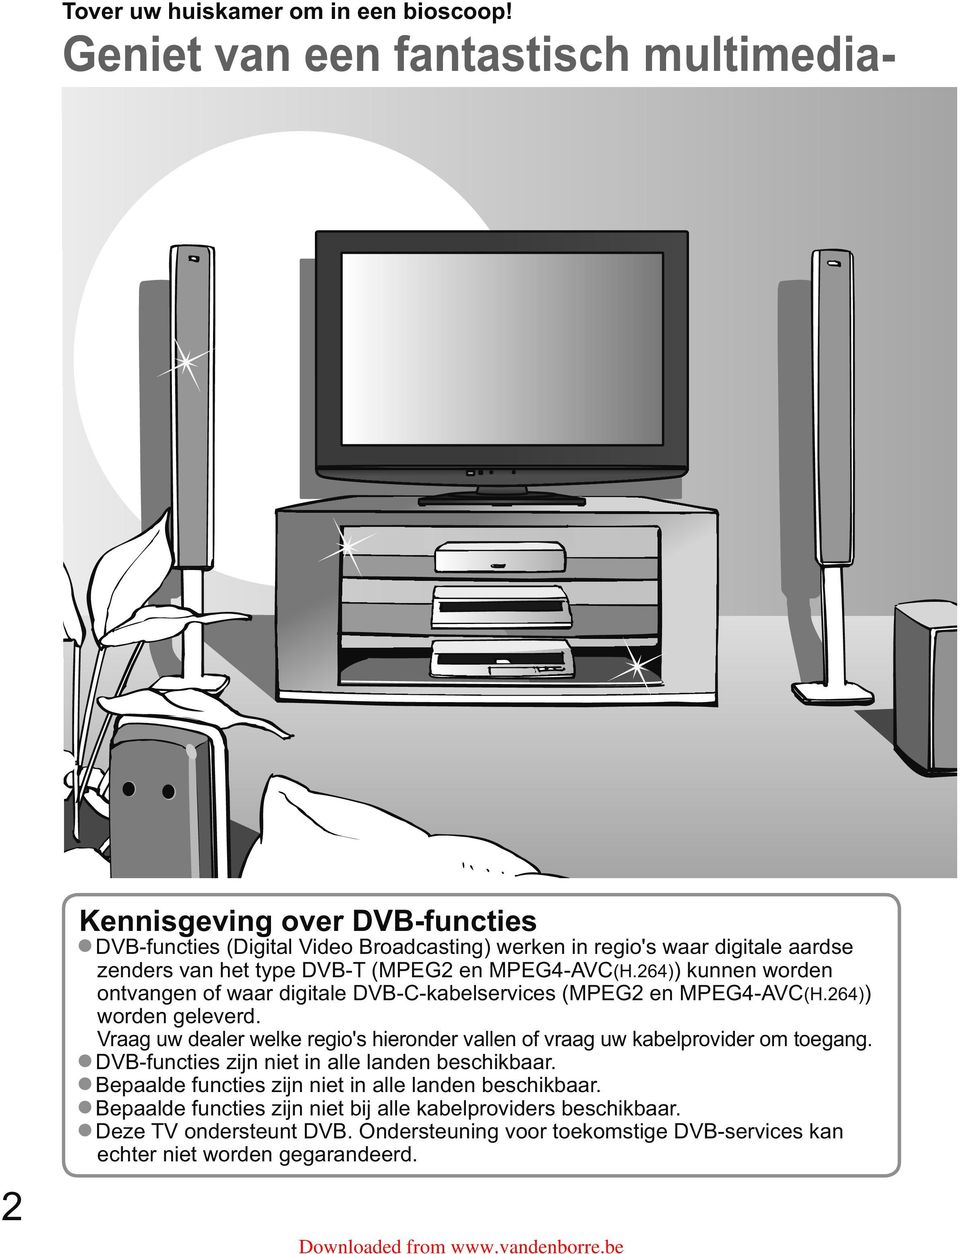 DVB-T (MPEG2 en MPEG4-AVC(H.264)) kunnen worden ontvangen of waar digitale DVB-C-kabelservices (MPEG2 en MPEG4-AVC(H.264)) worden geleverd.